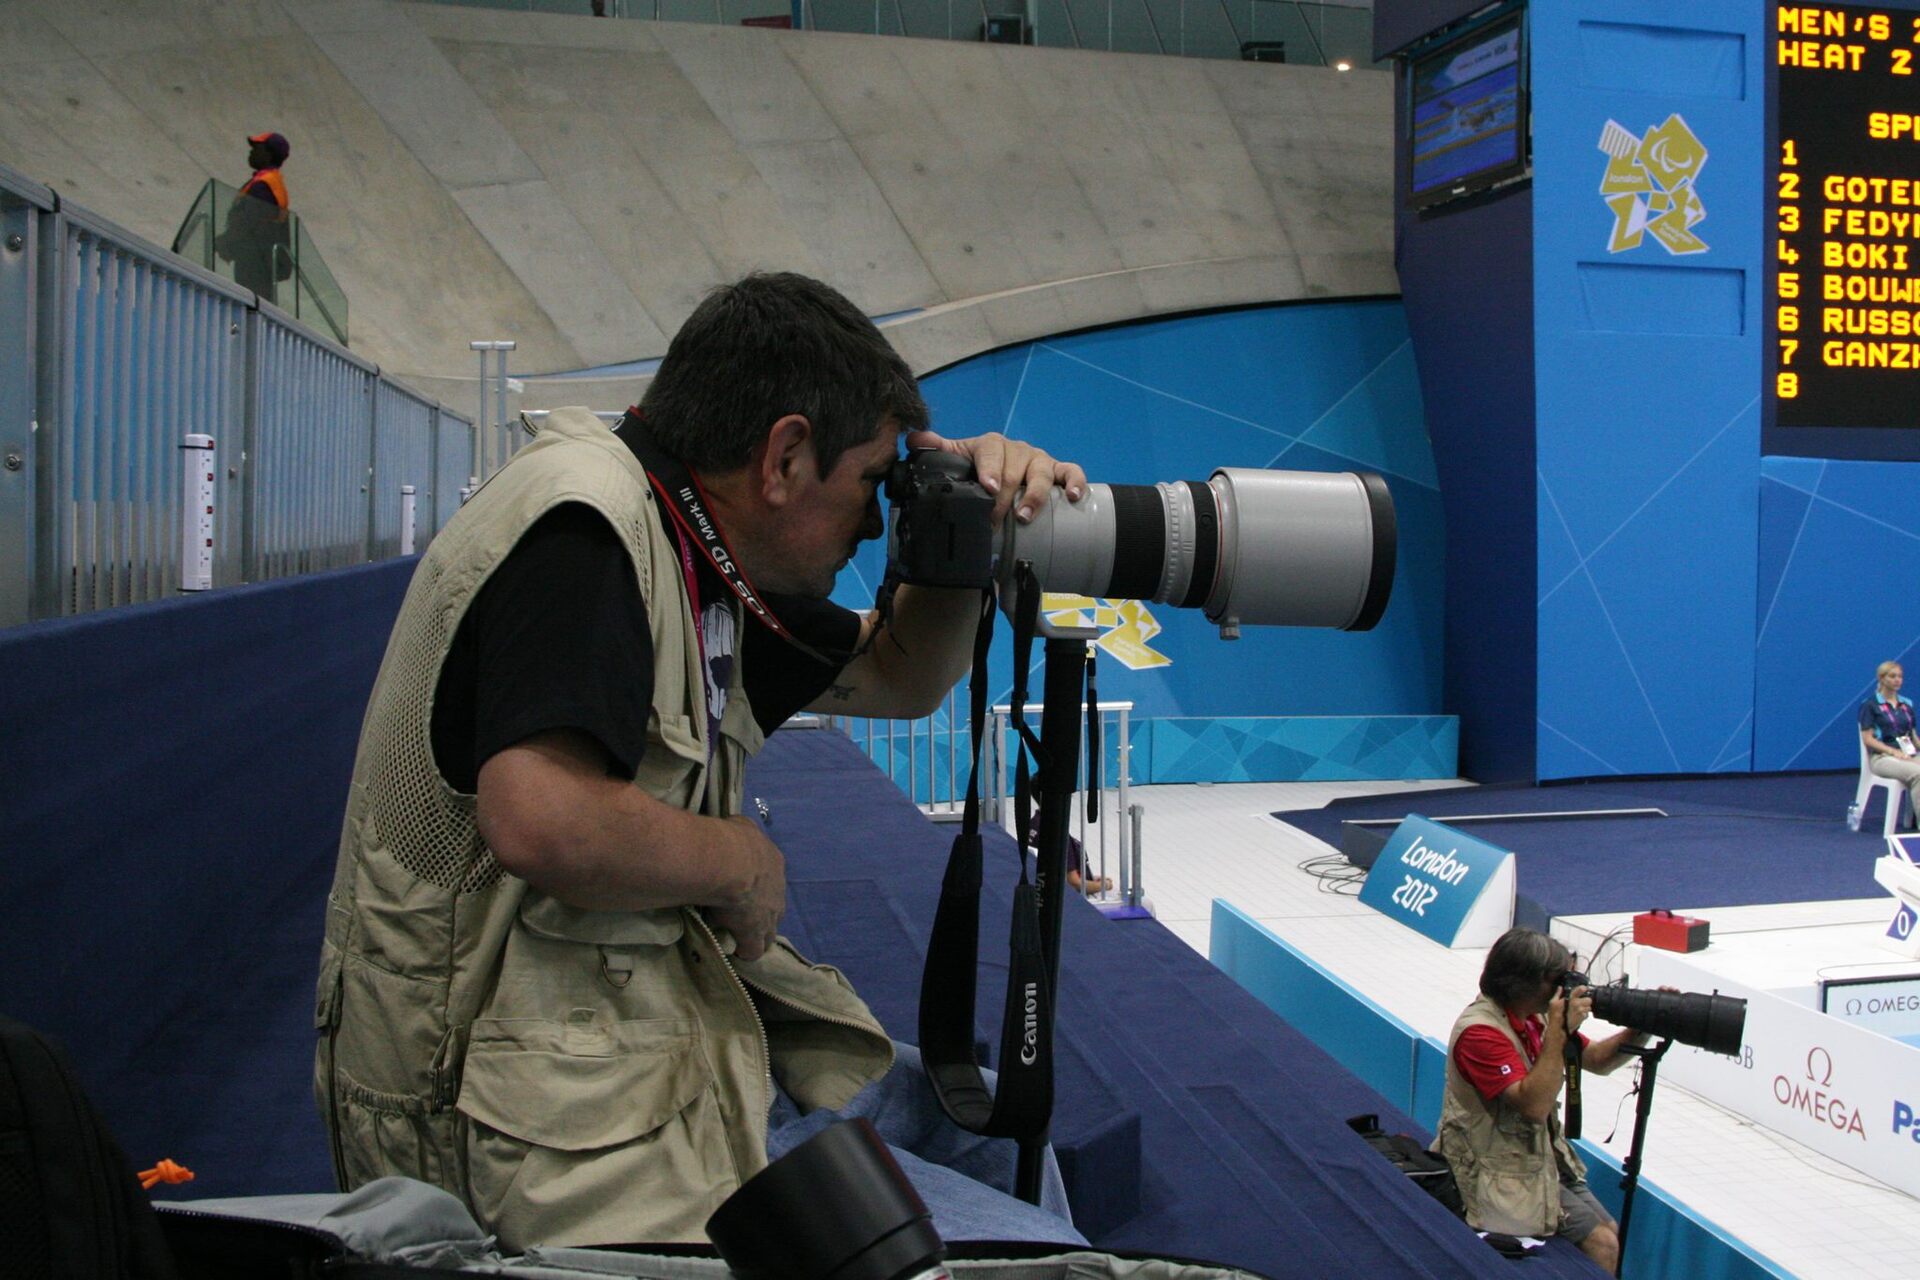 O fotógrafo quer registrar a Paralimpíada do Rio 